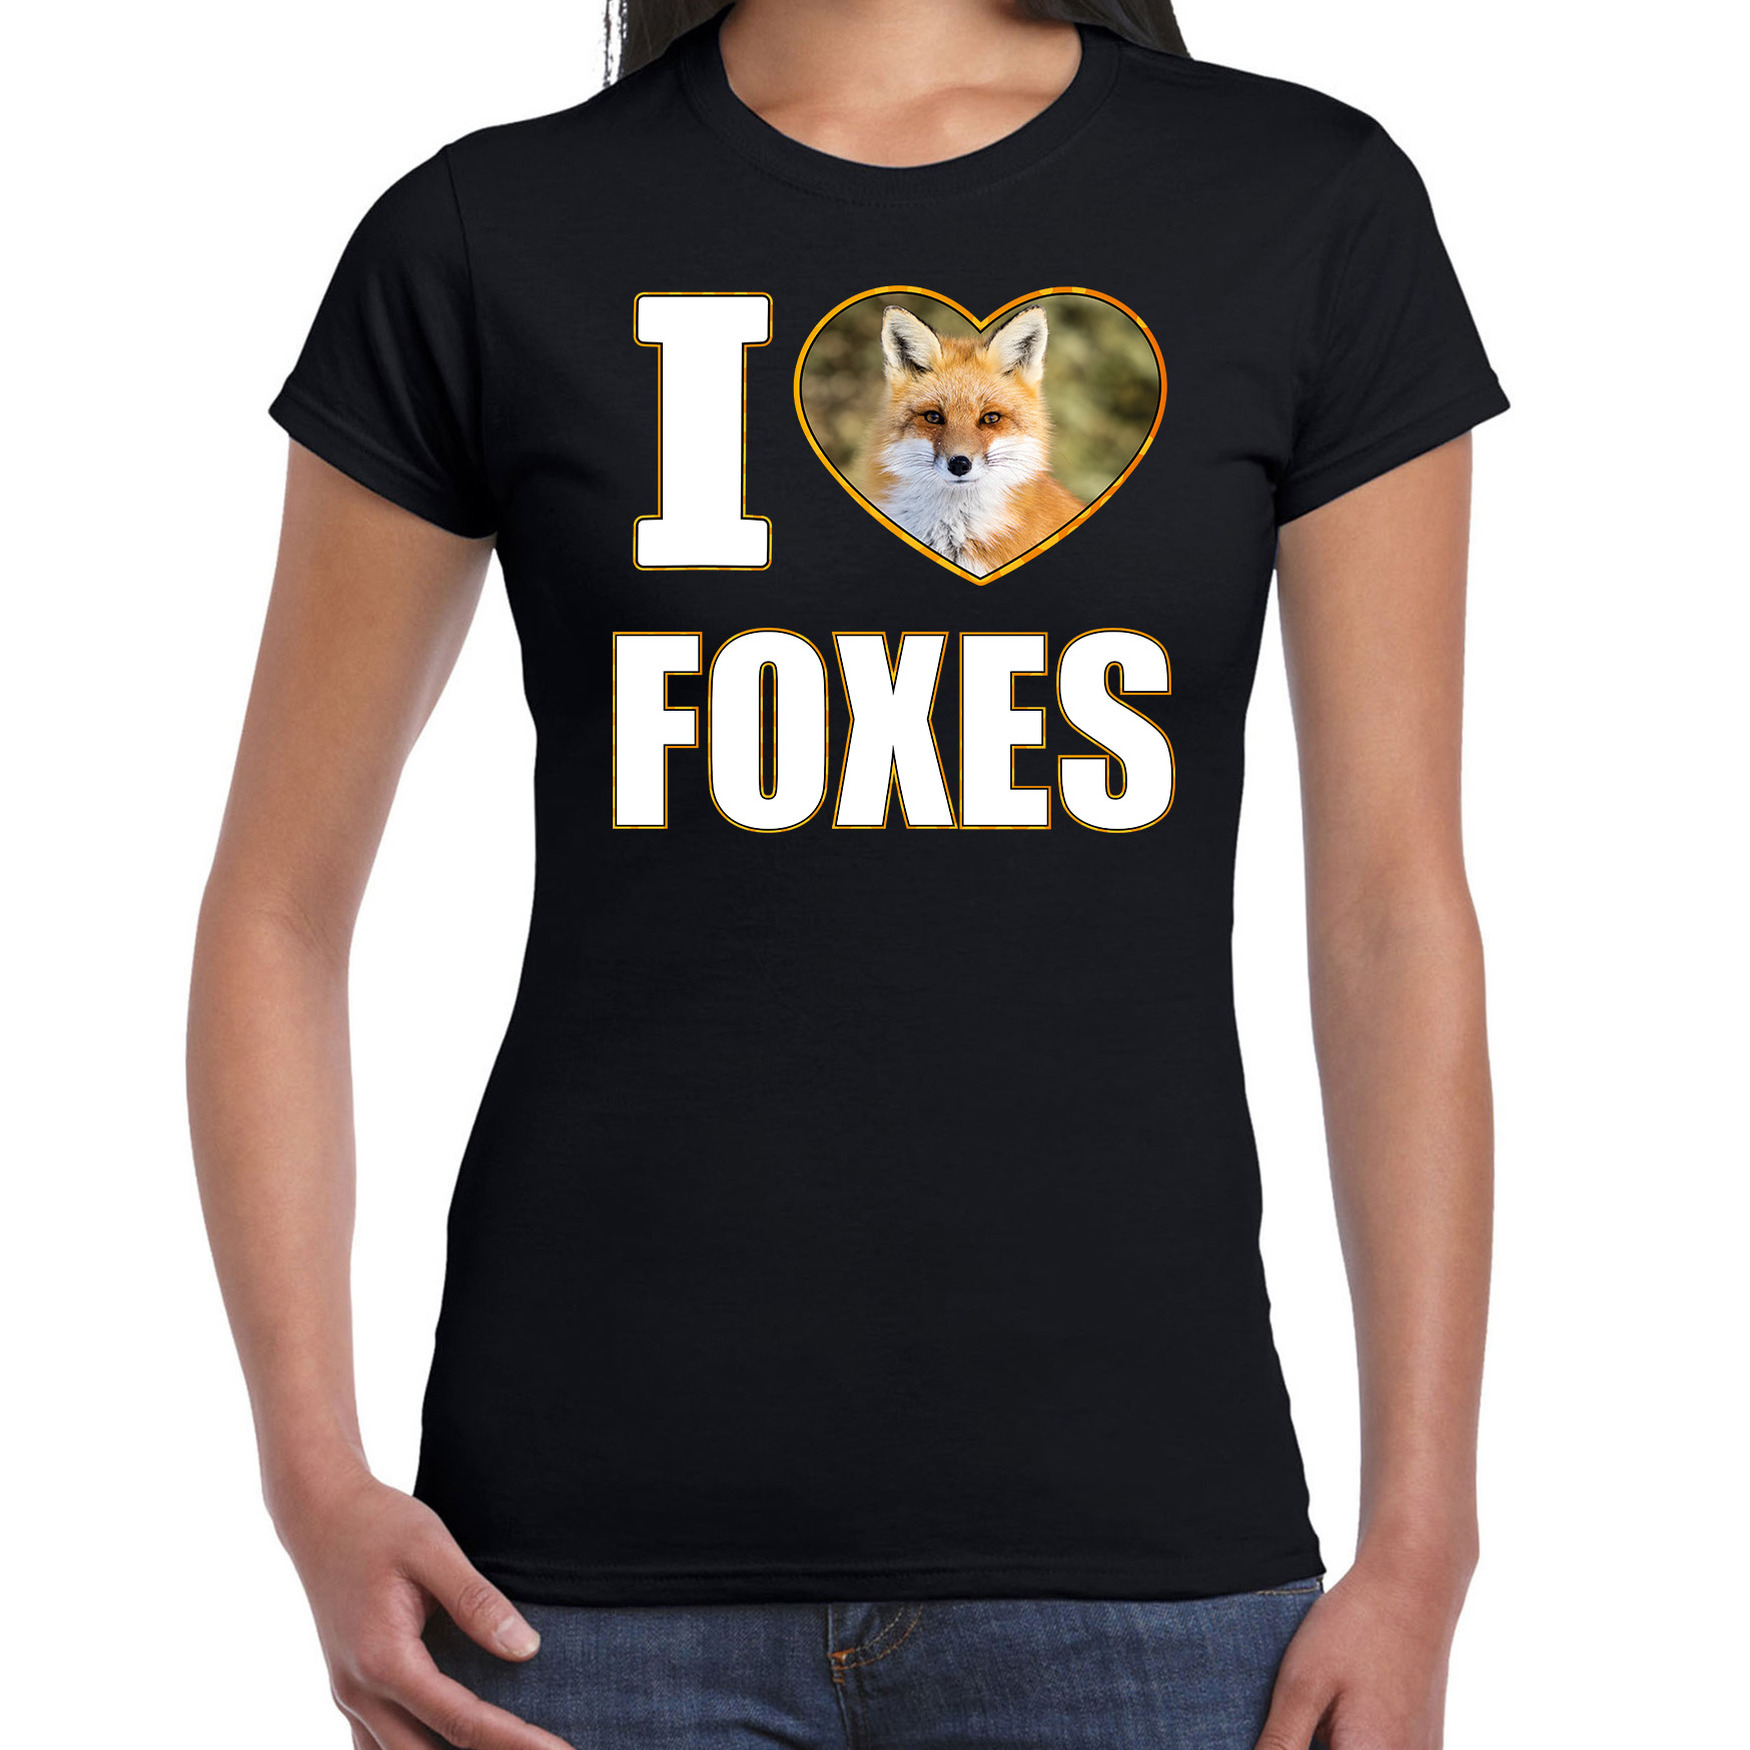 I love foxes t-shirt met dieren foto van een vos zwart voor dames